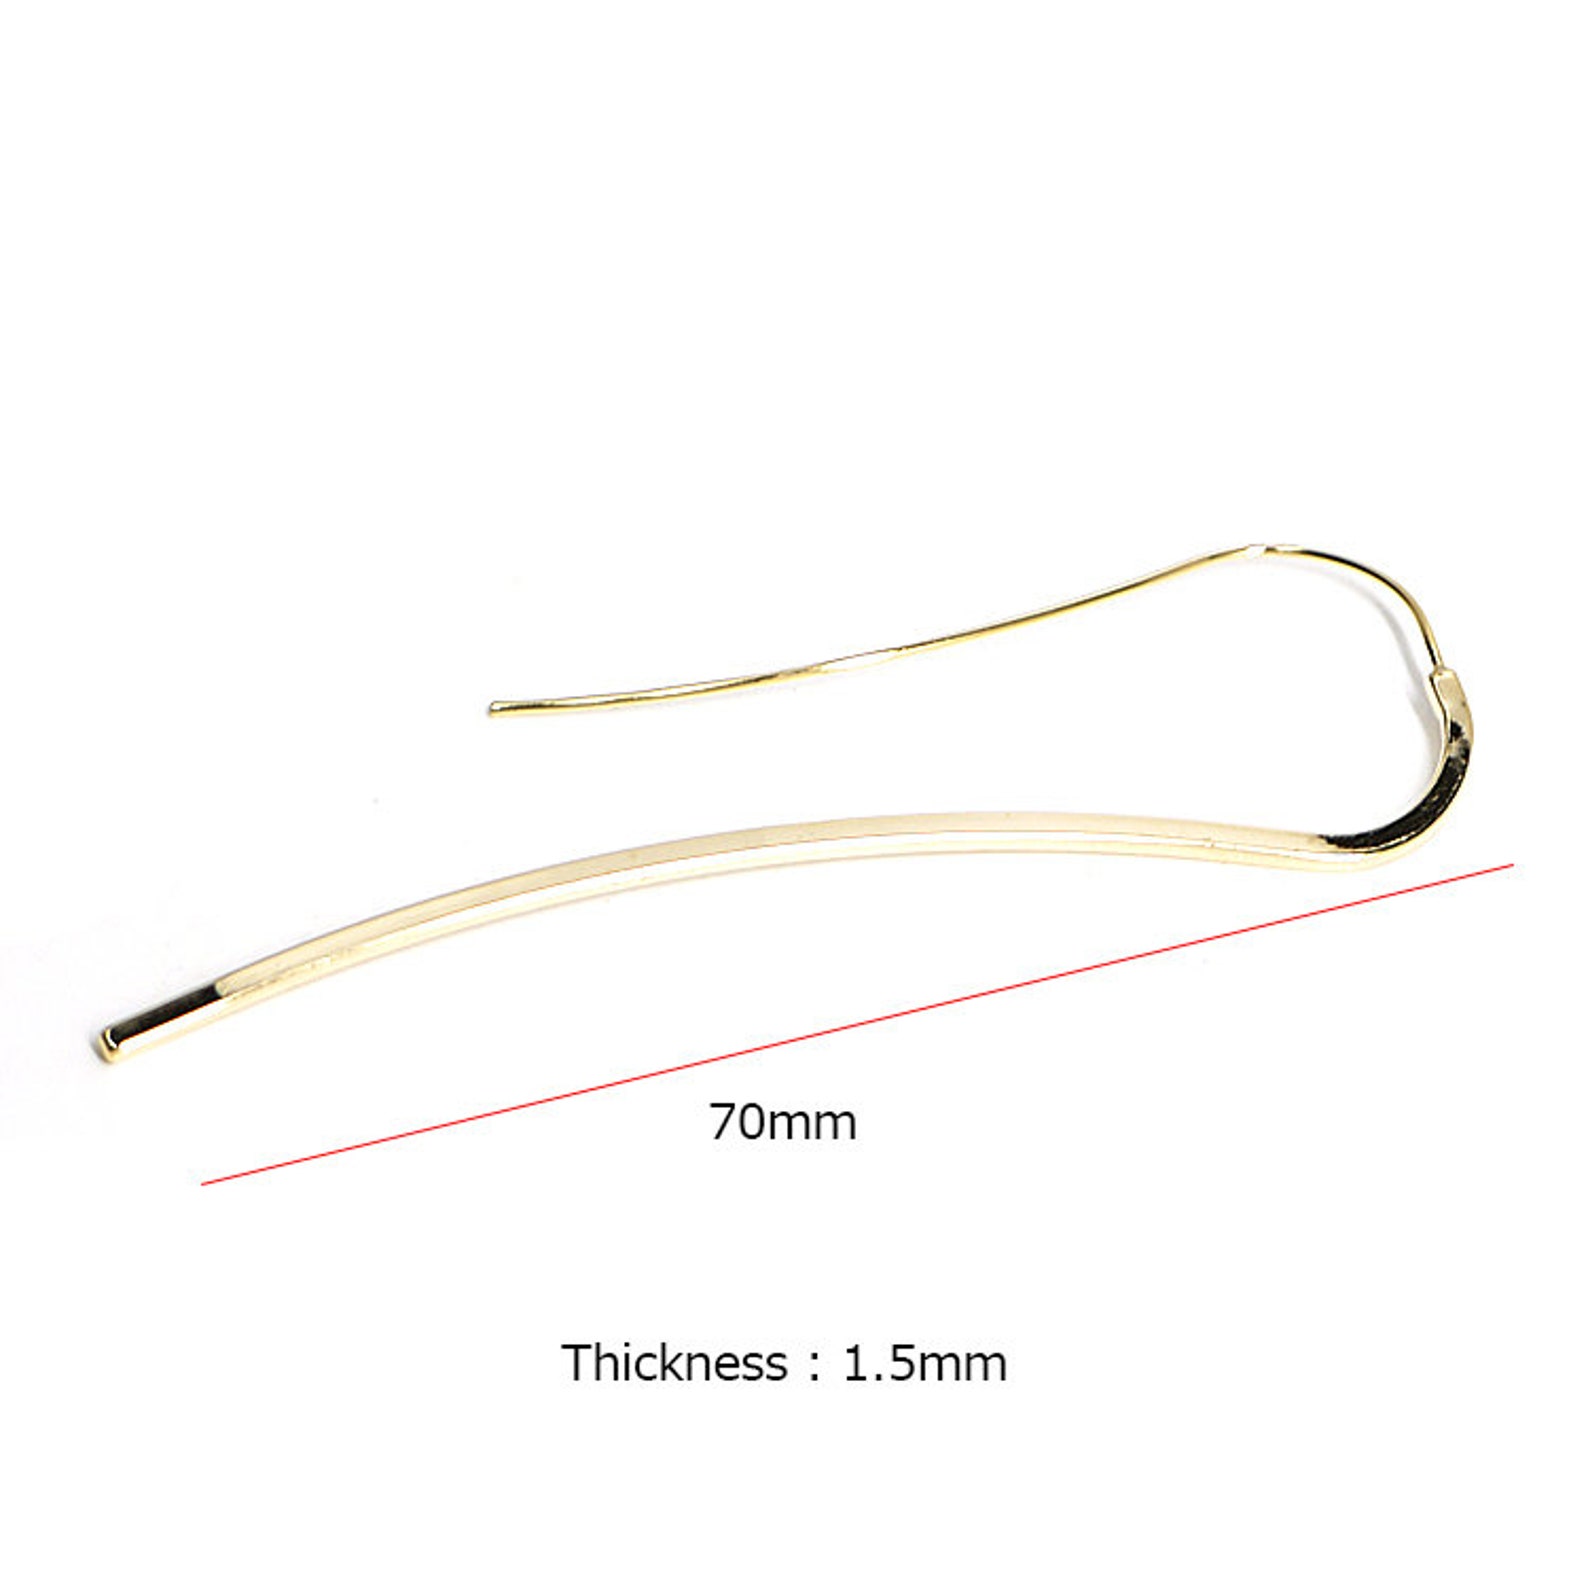 70mm Long Waved Stick Hook Earrings / Wedding / Jewelry Making | Etsy